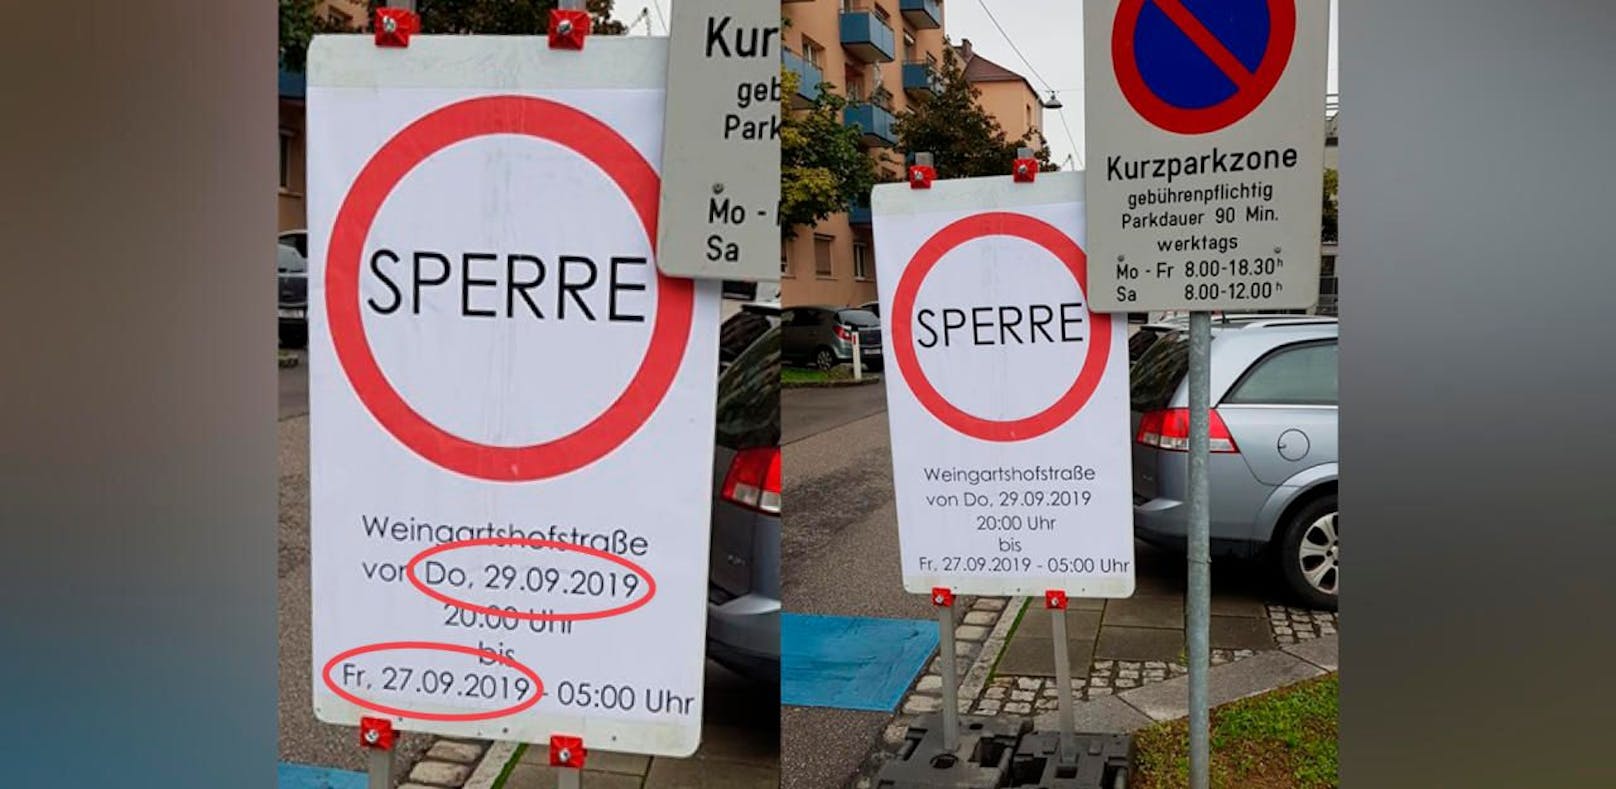 Laut diesem Schild ist die Weingartshofstraße von 29.9 bis zwei Tage zurück am 27.9. gesperrt.